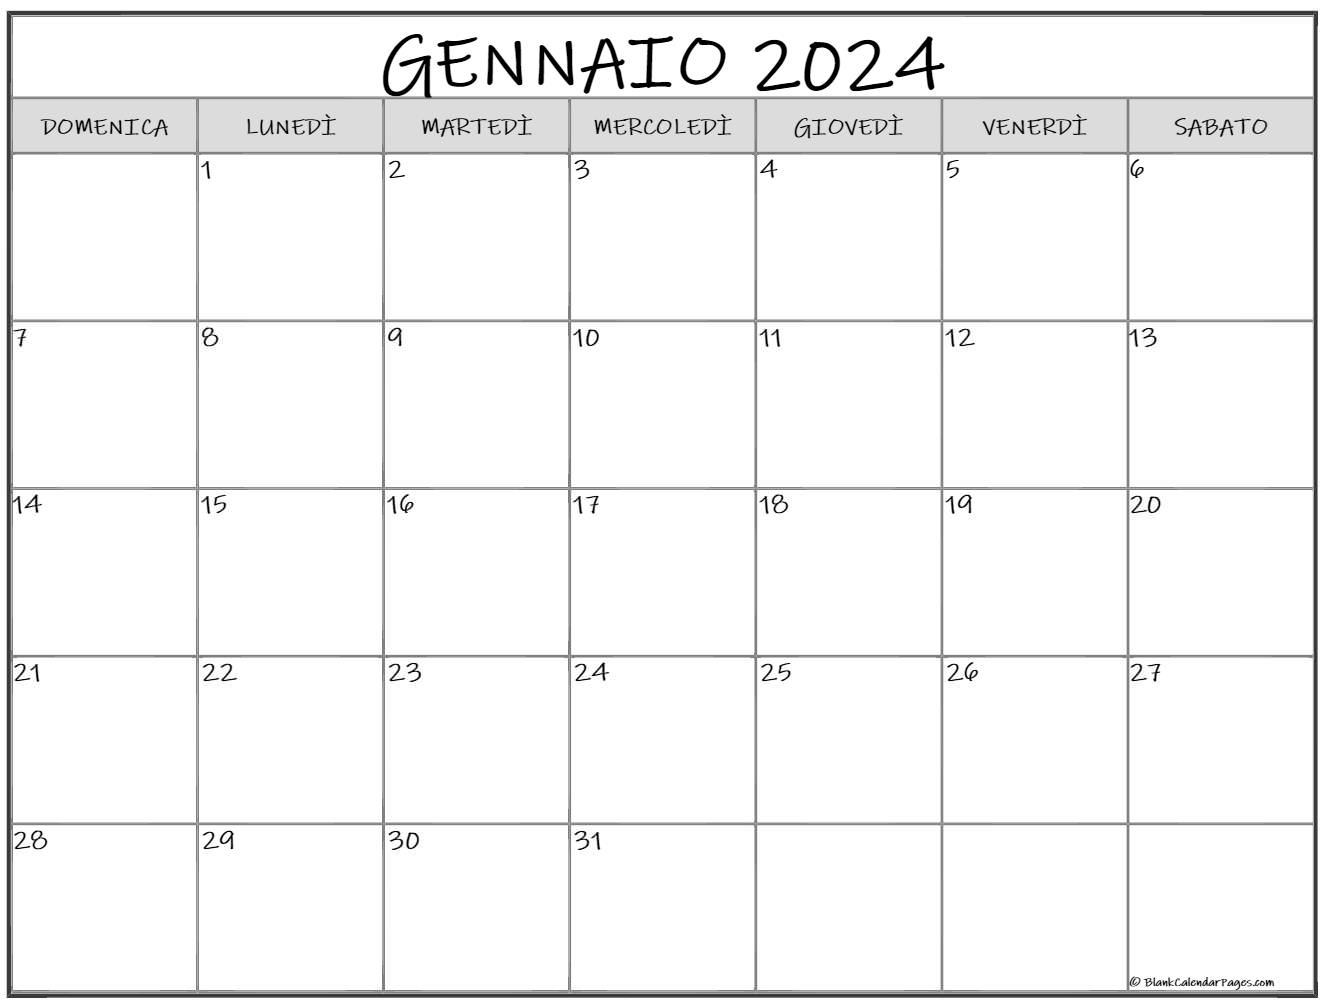 Calendario 2024 da stampare, planning mensile 2024 perdiswellfarm.co.uk